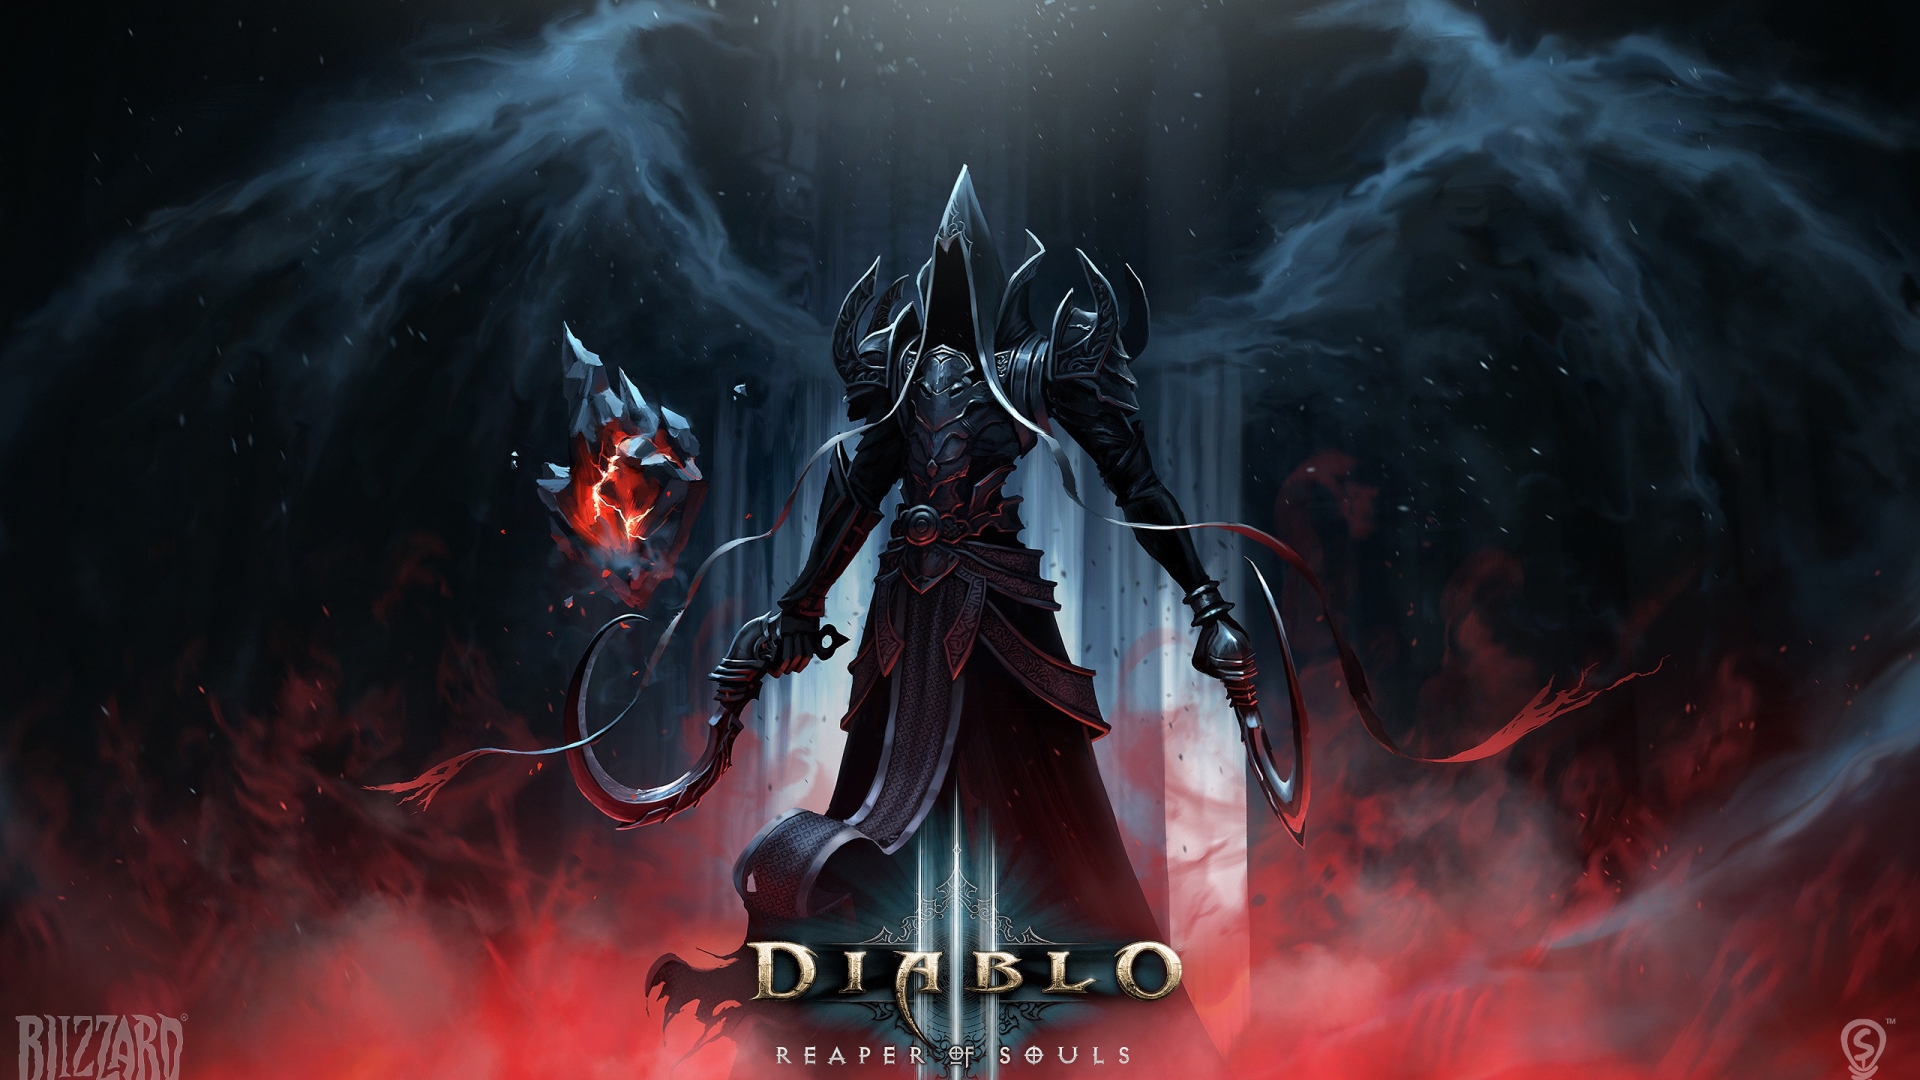 Diablo 3 Reaper of Souls for 1920 x 1080 HDTV 1080p resolution